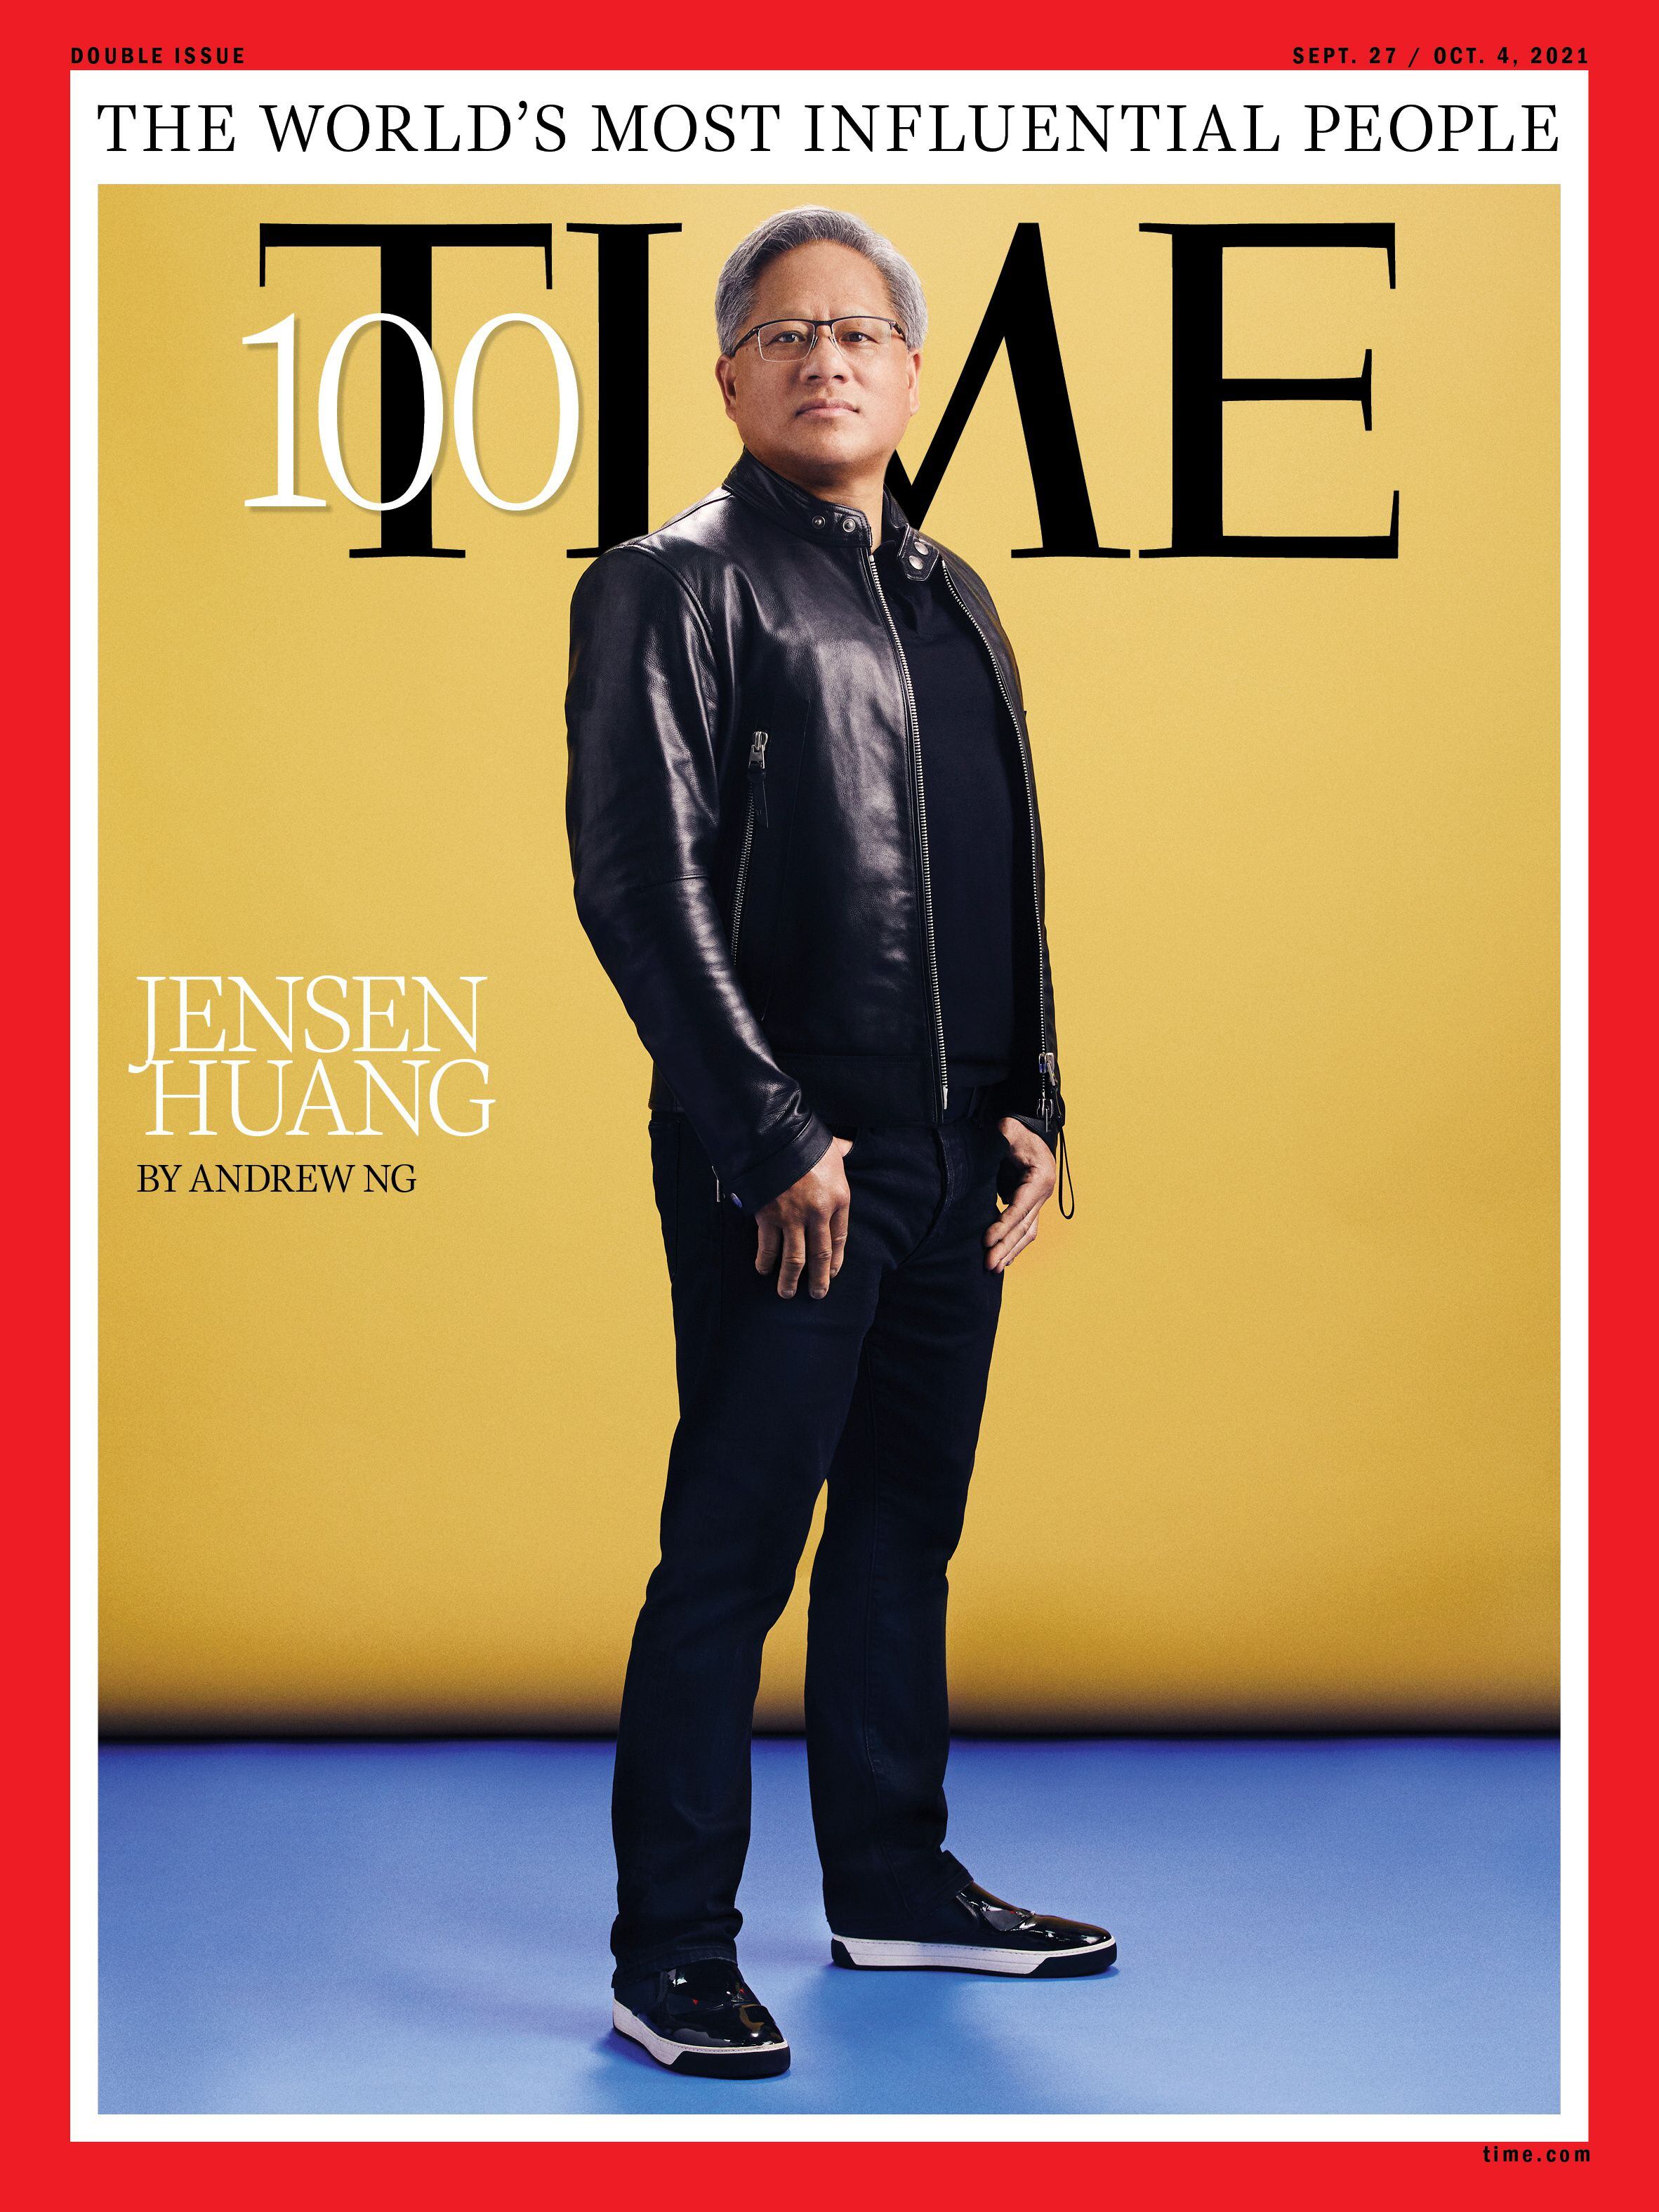 Jensen Huang apareció en la portada de TIME de las personalidades más influyentes del mundo en 2021 